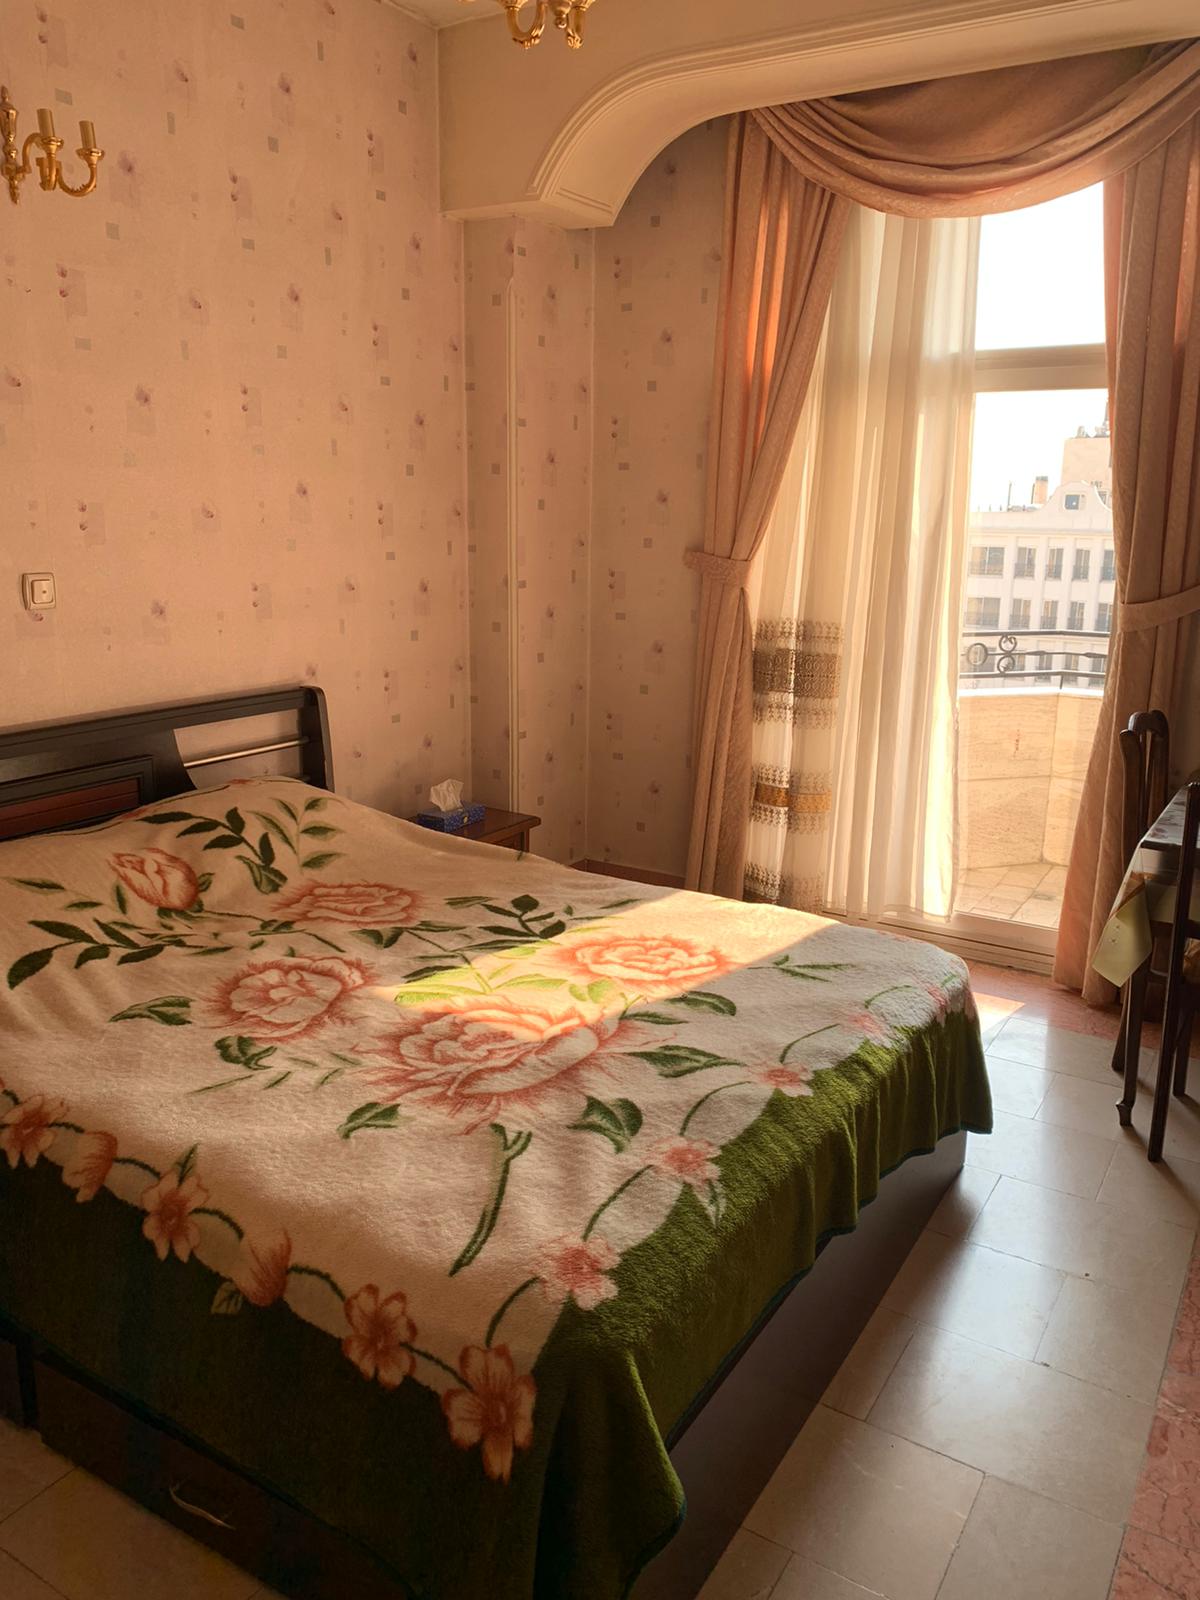 Furnished Apartment In Tehran Jordan Code 1478-5